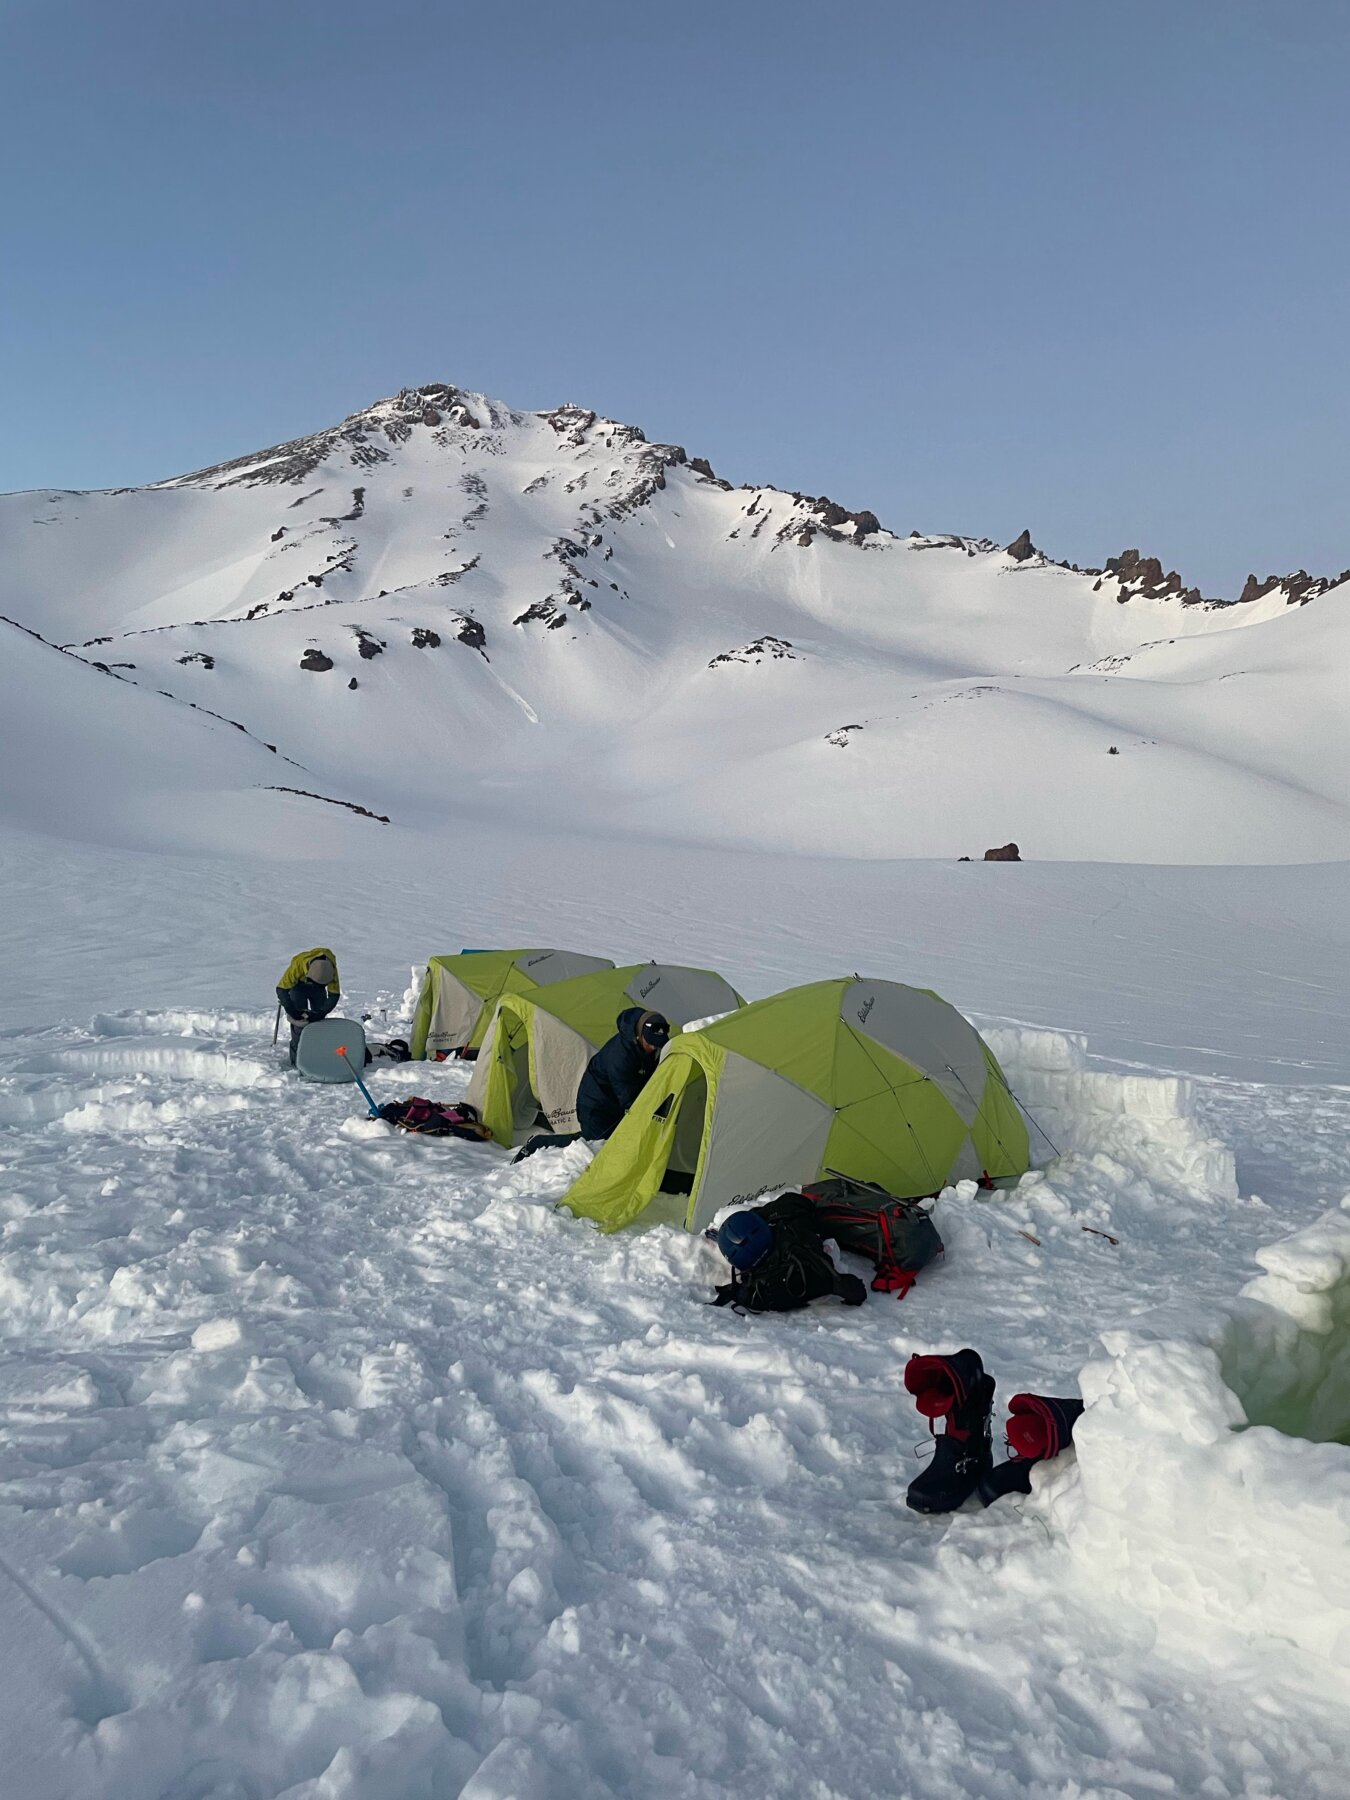 Overnight camp set up on Mount Shasta